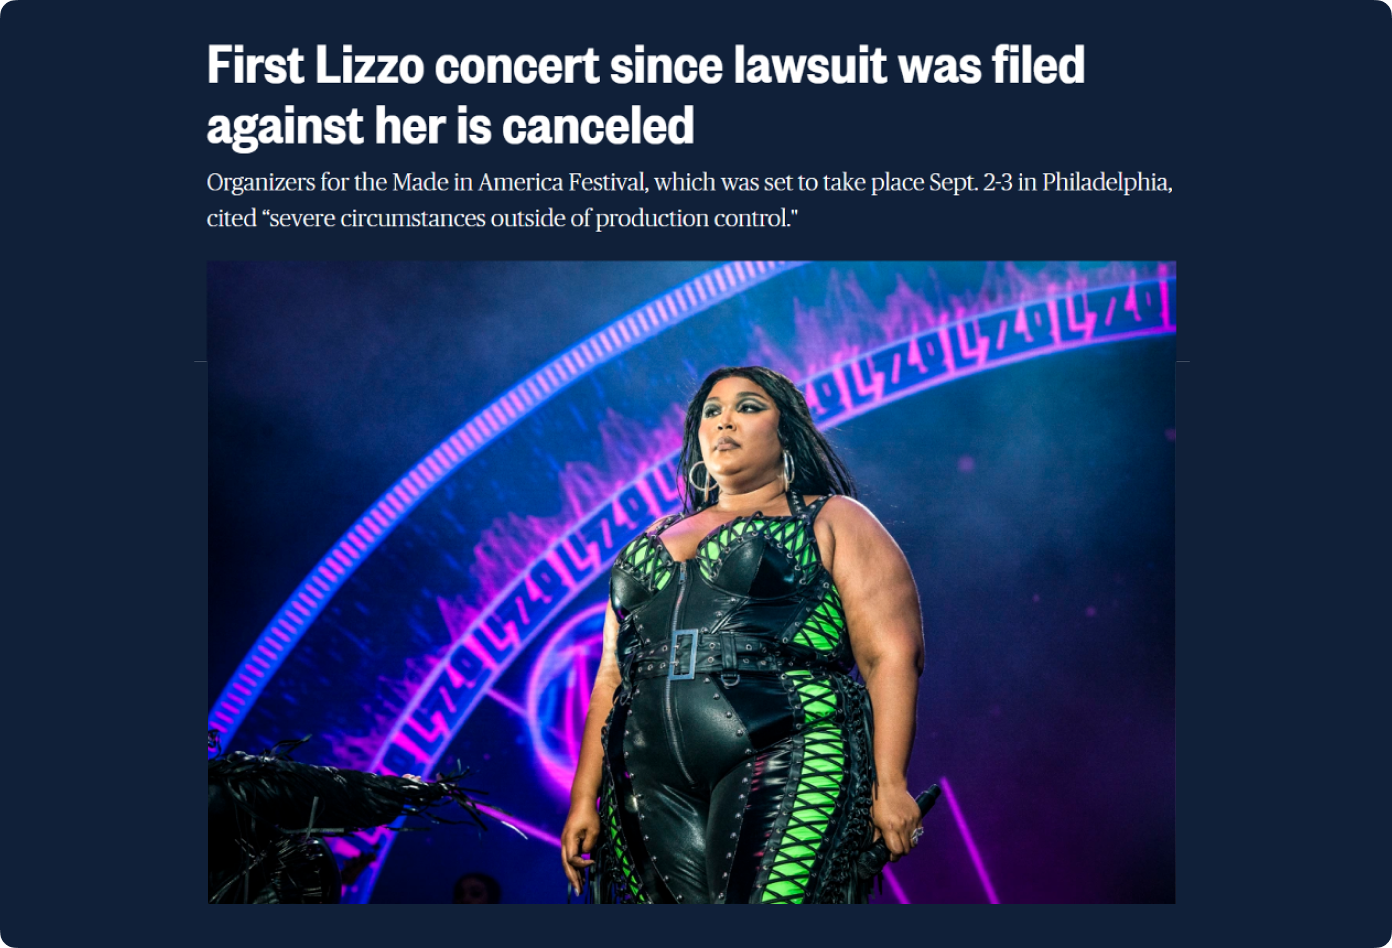 После новостей об иске организаторы отменили крупный музыкальный фестиваль The Made of America, где Лиззо должна была стать хедлайнером